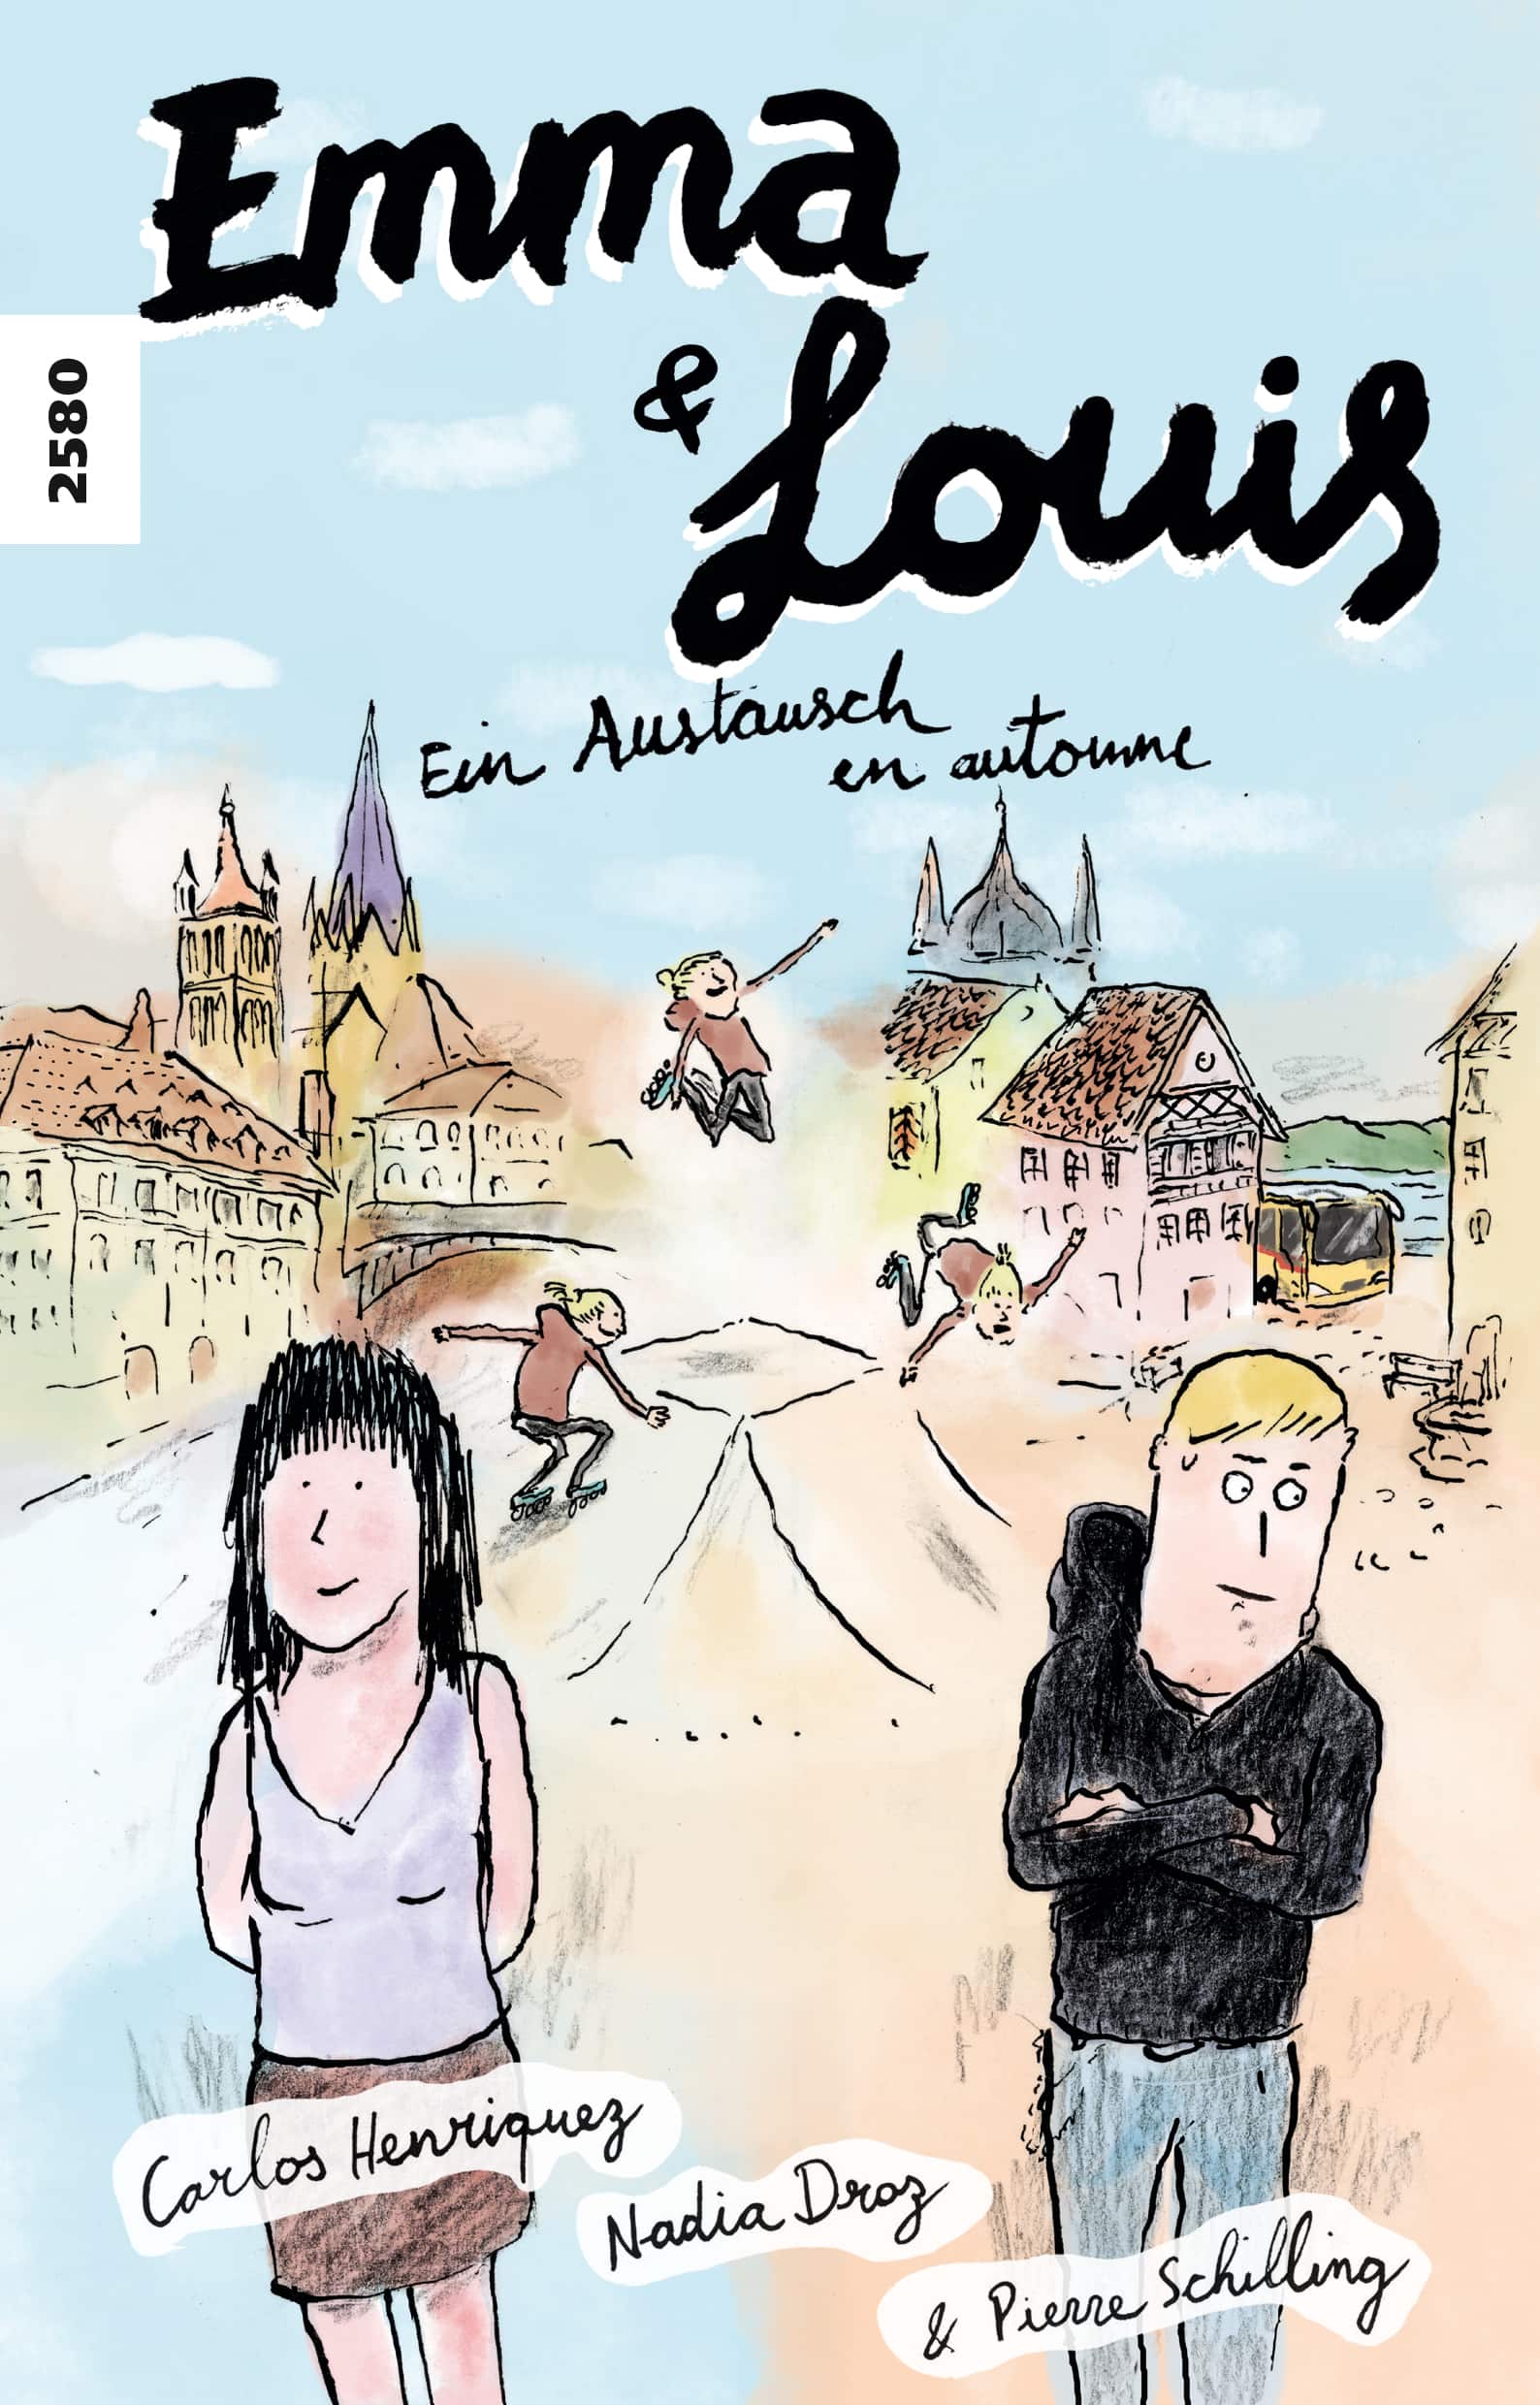 Emma & Louis, ein zweisprachiges Buch von Carlos Henriquez/Nadia Droz, Illustration von Pierre Schilling, SJW Verlag, Austausch